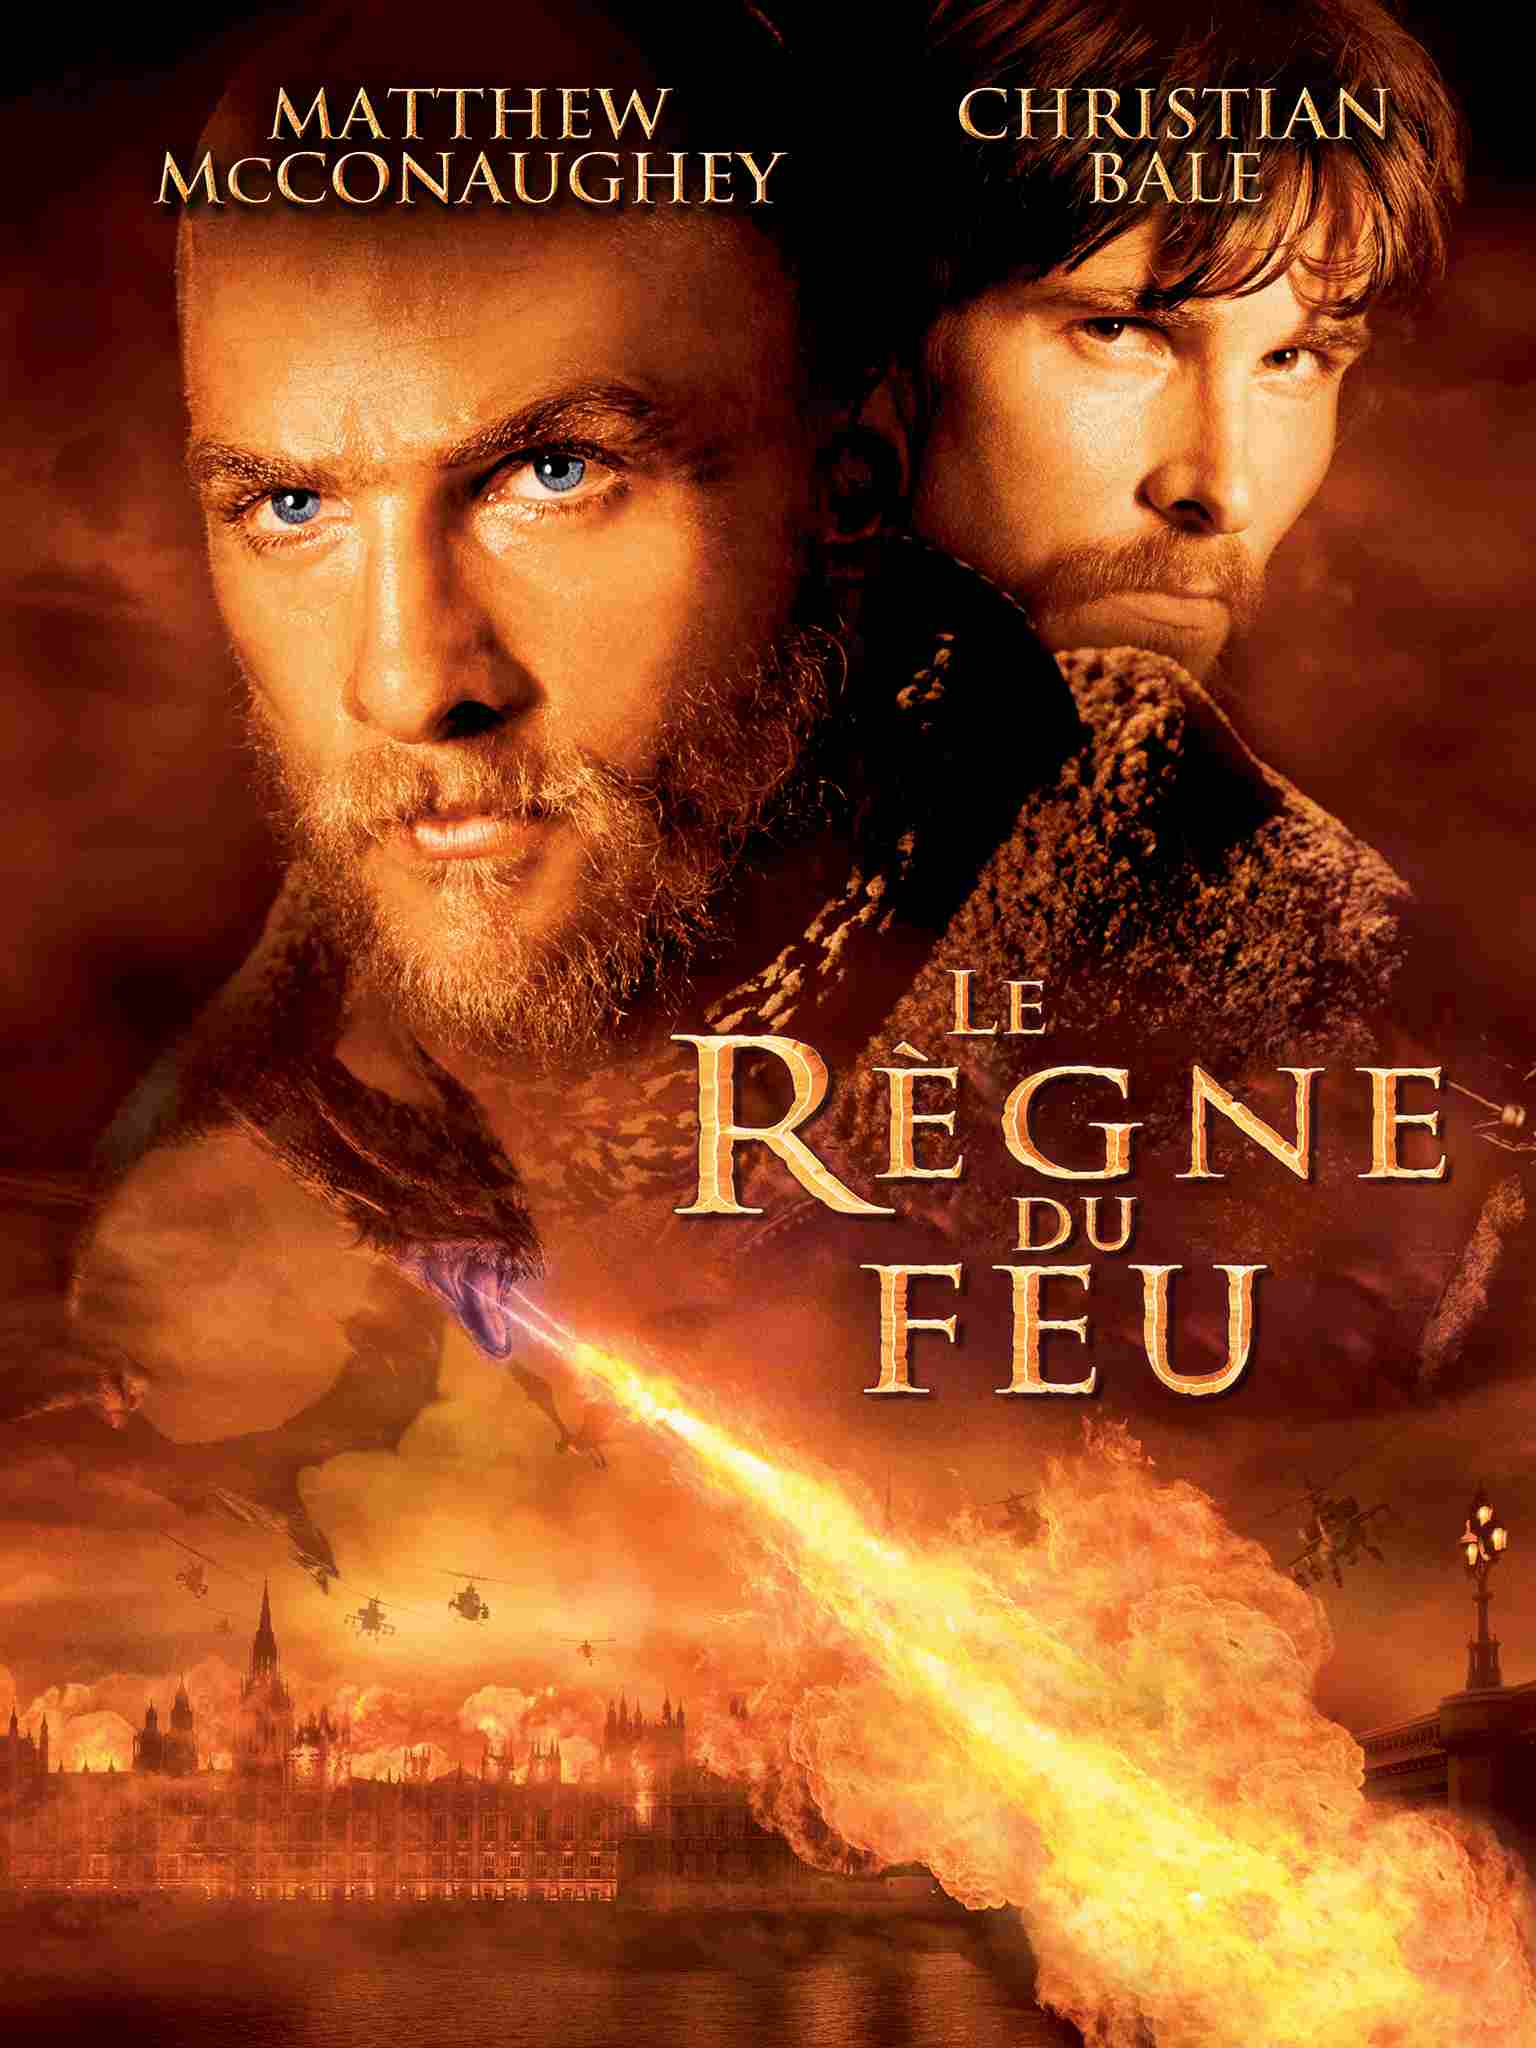 فیلم منطقه آتش Reign of Fire 2002 با دوبله فارسی